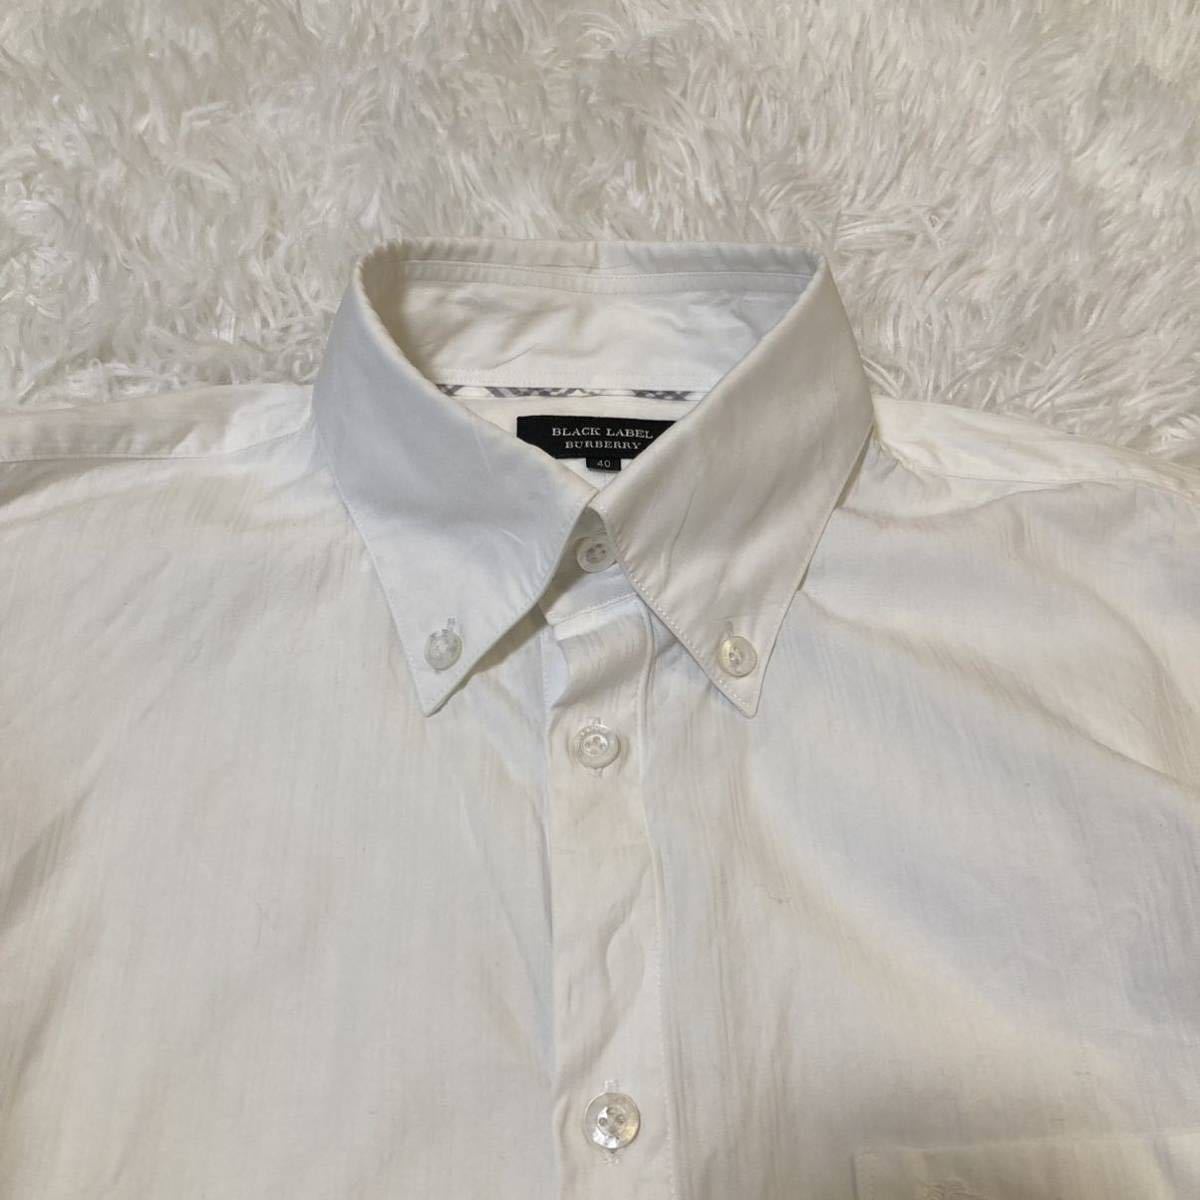 BURBERRY BLACK LABEL バーバリーブラックレーベル 長袖シャツ 40 L ホワイト 白 ボタン ストライプ 刺繍 ドレスシャツ ビジネス チェック_画像3